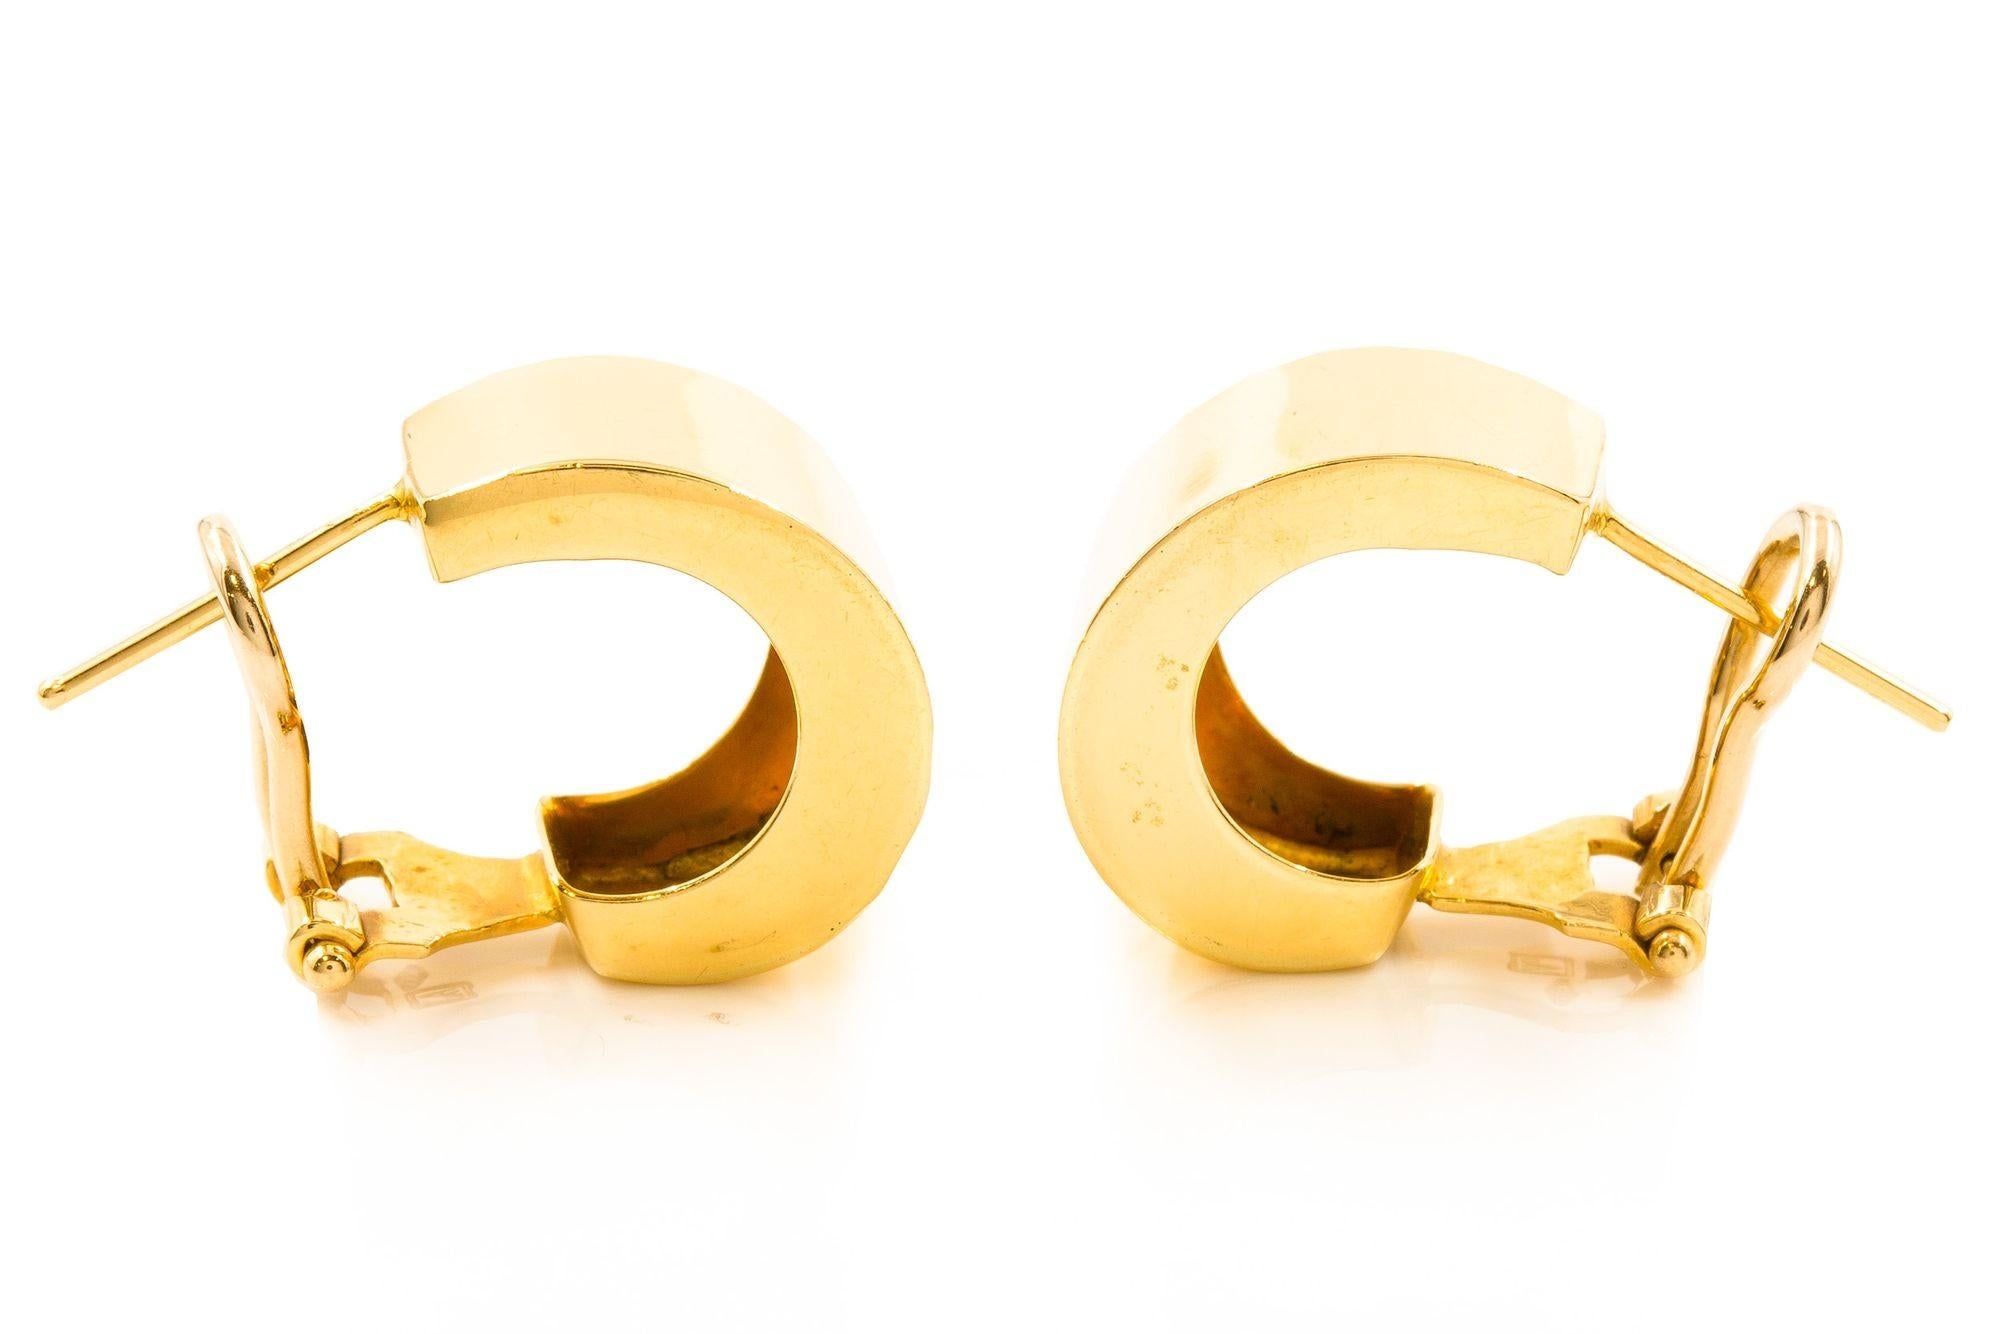 Pair of 14K Yellow Gold Hoop Earrings 1